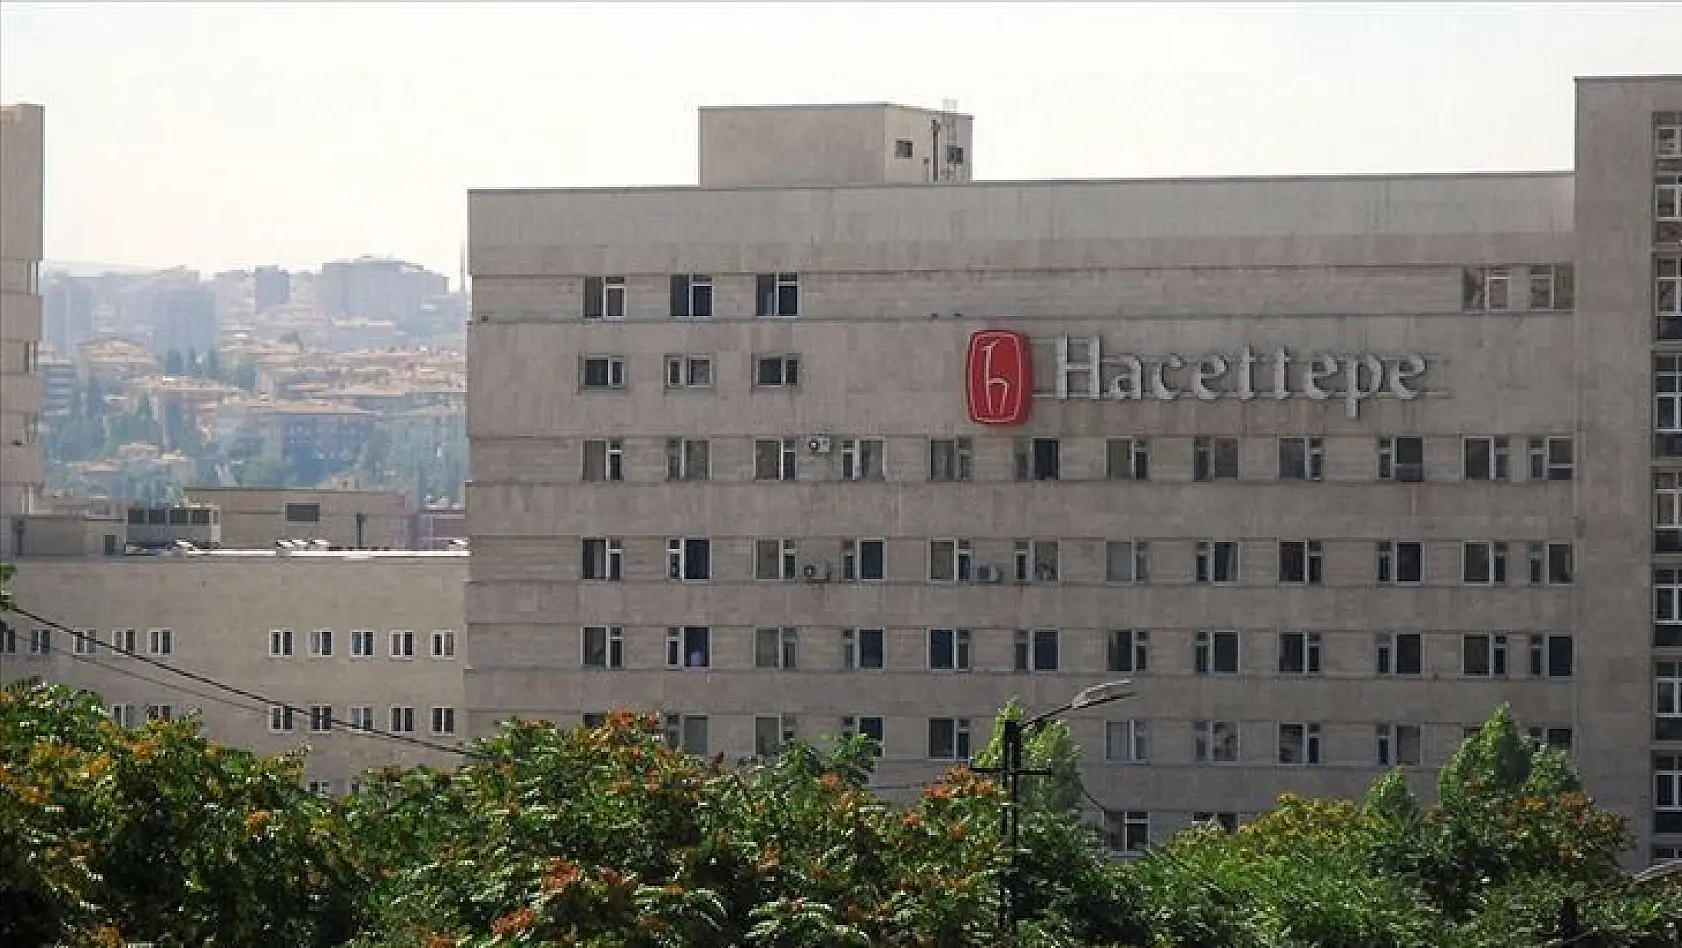 Hacettepe Üniversitesi 65 sözleşmeli personel alacak